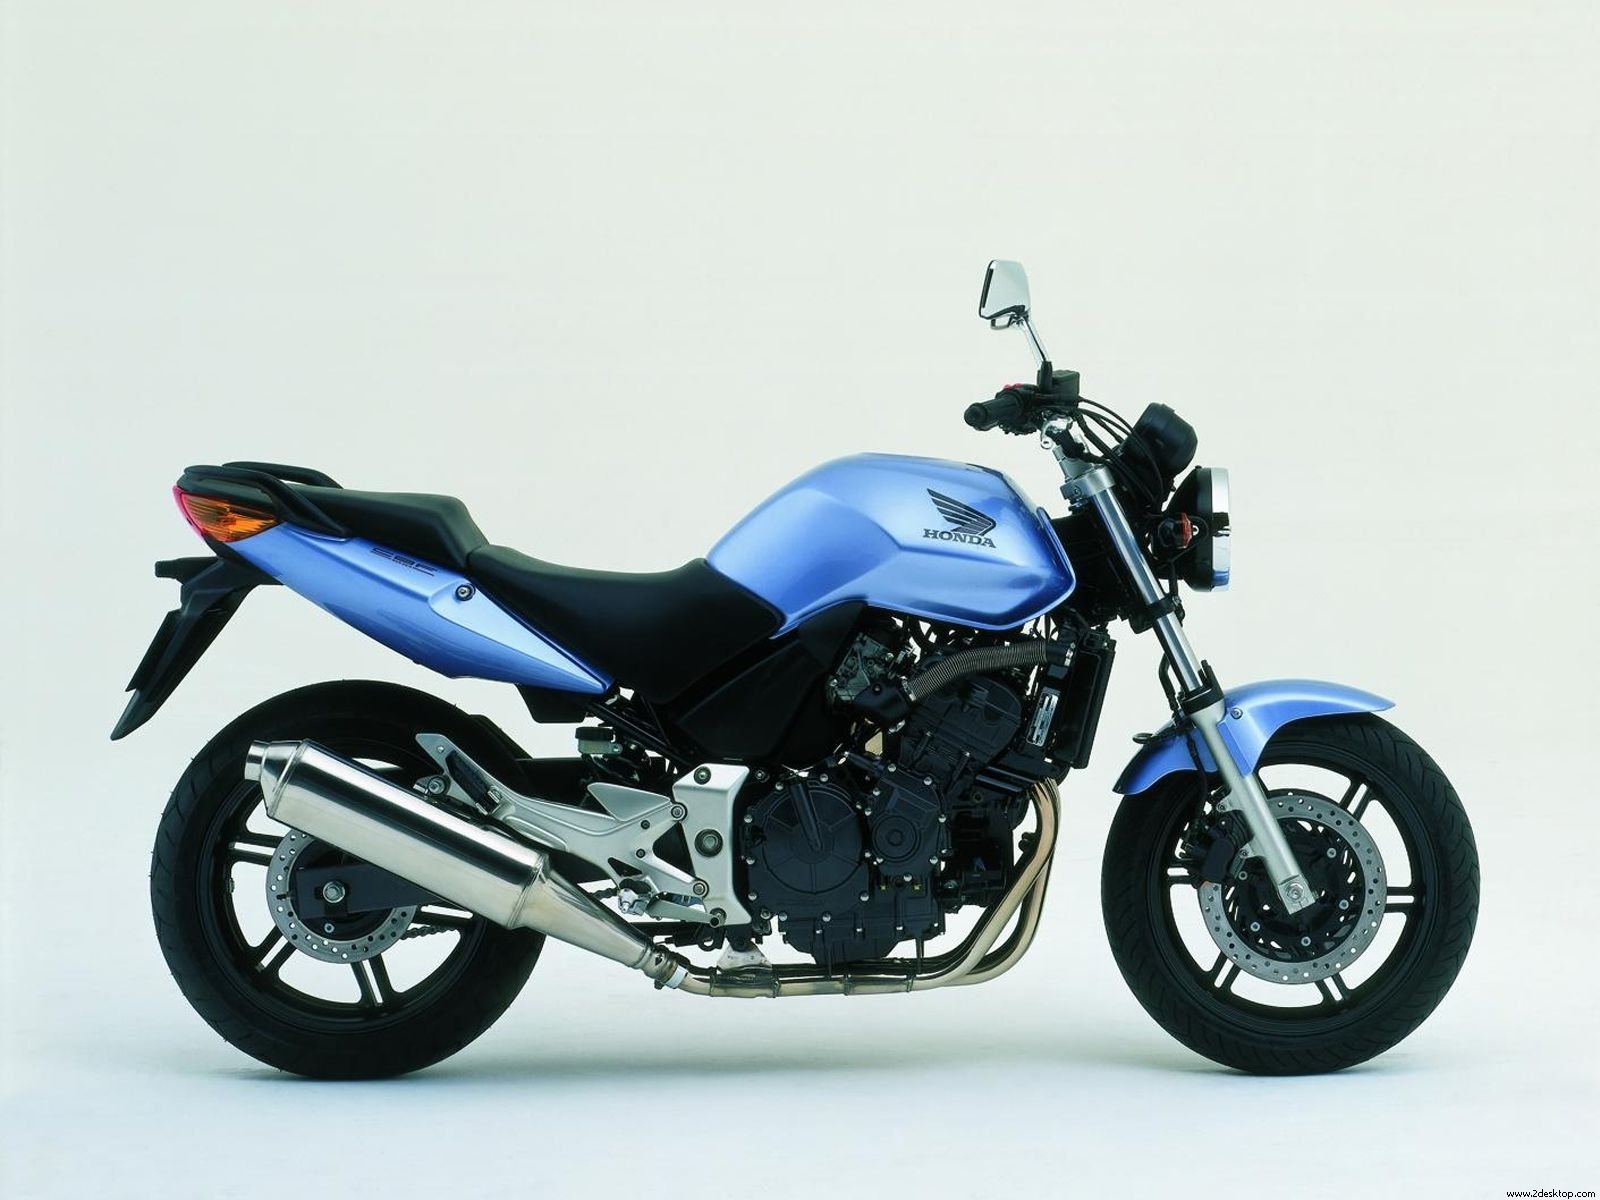 Honda Bike Image Download